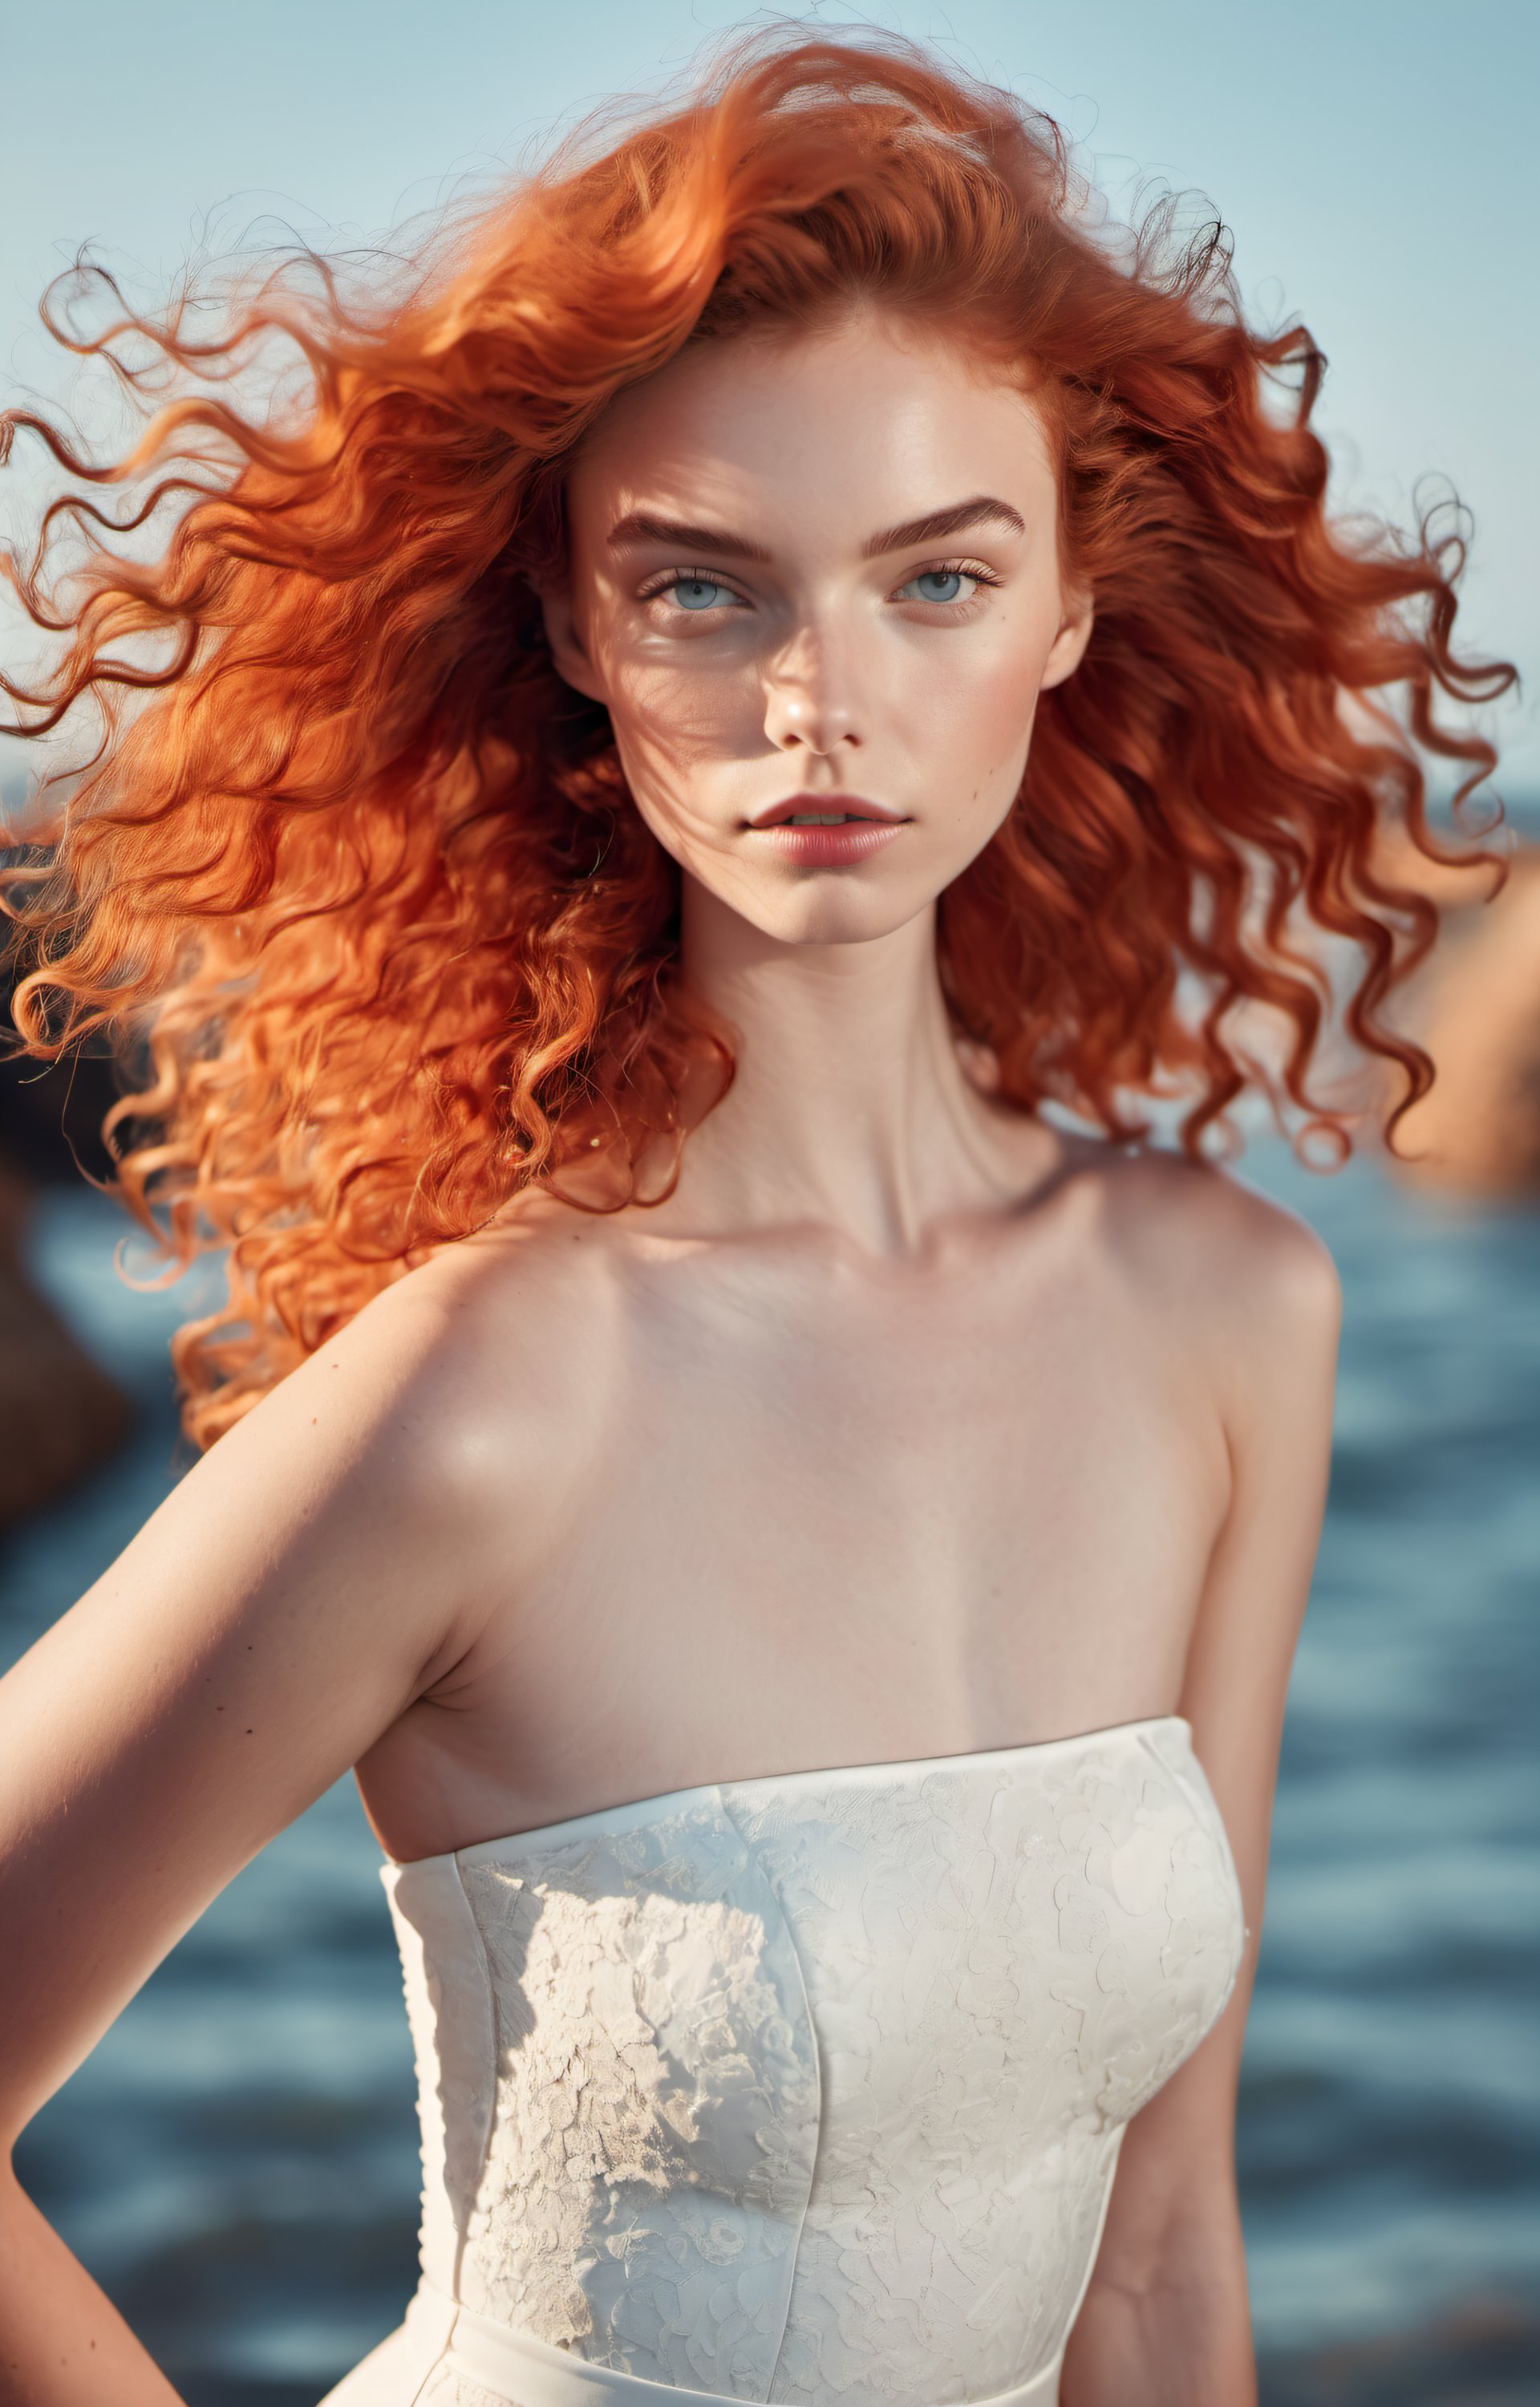 curly red hair model in white mermaid dress